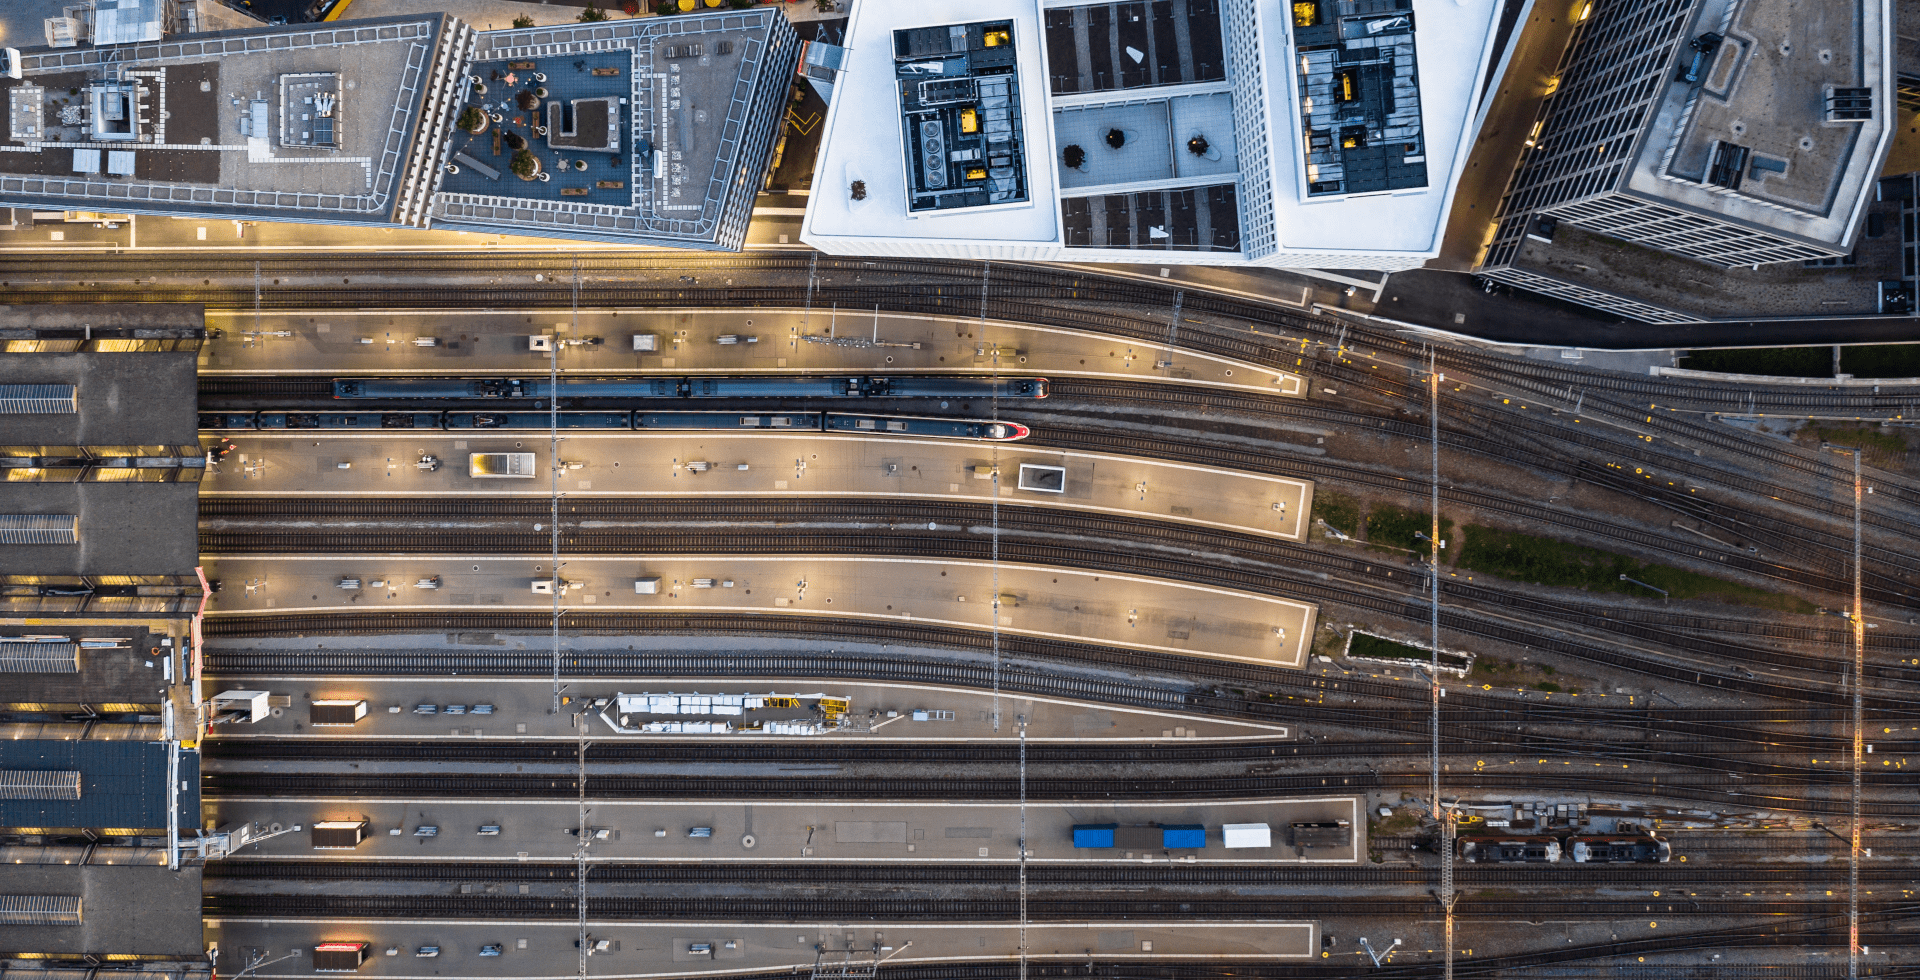 Aerial photo of the main station in Zurich, Switzerland